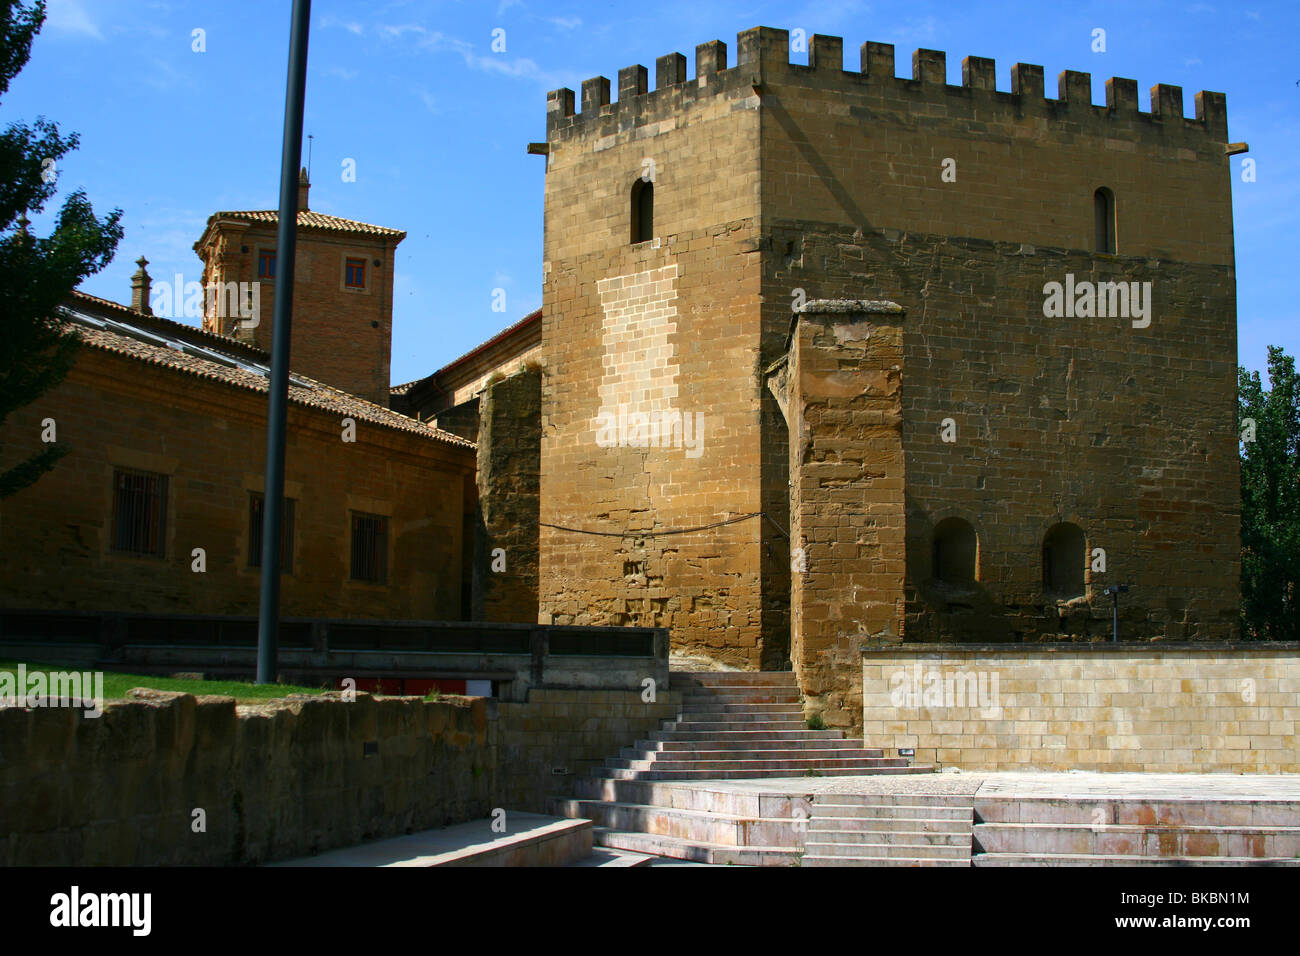 Ancien bâtiment de l'architecture mauresque à Huesca, Espagne Banque D'Images